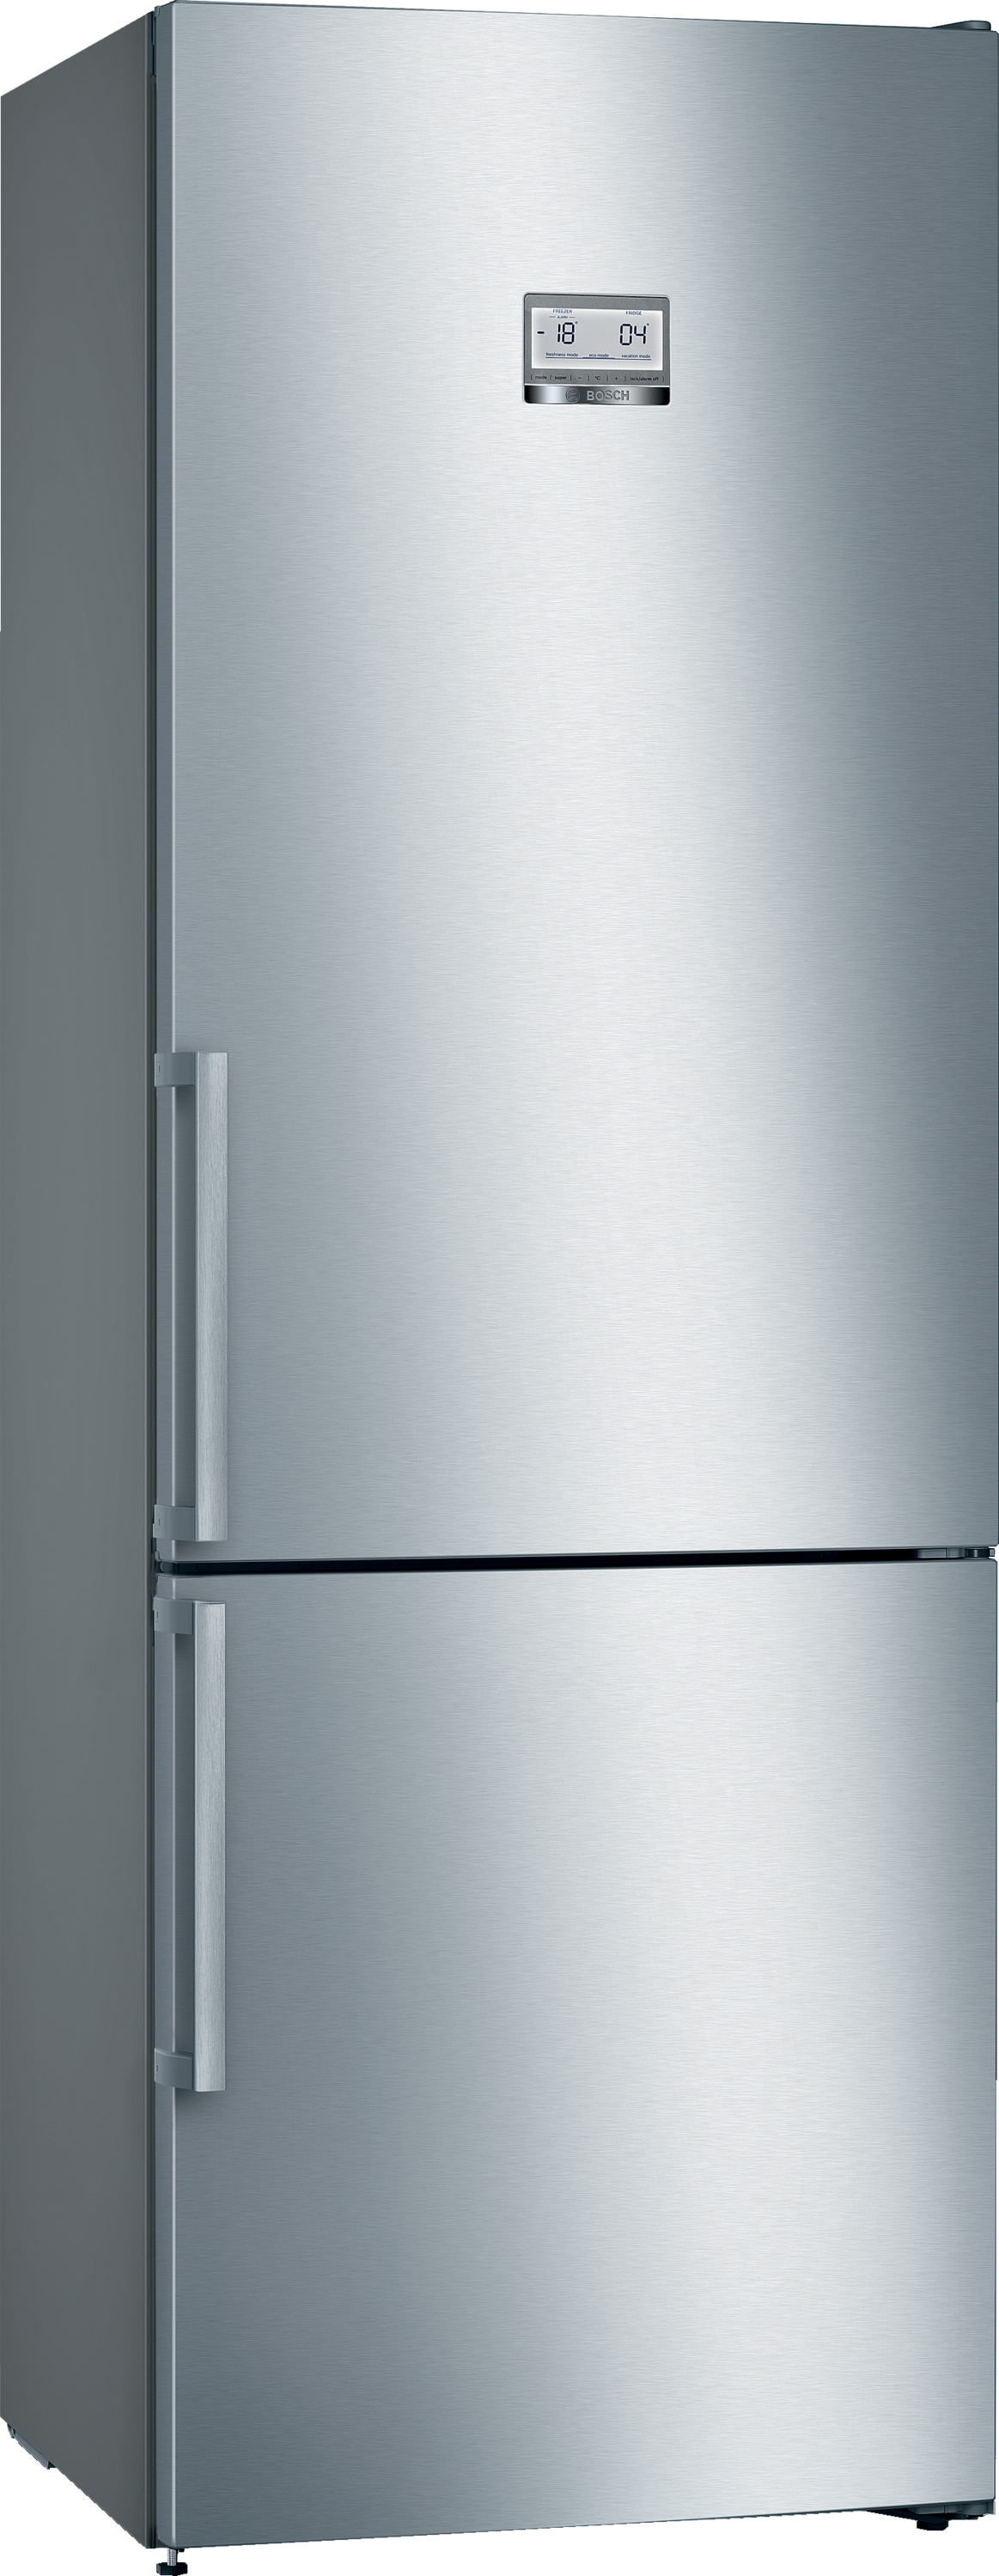 KGN49AIDP, Samostojeći frižider sa zamrzivačem dole